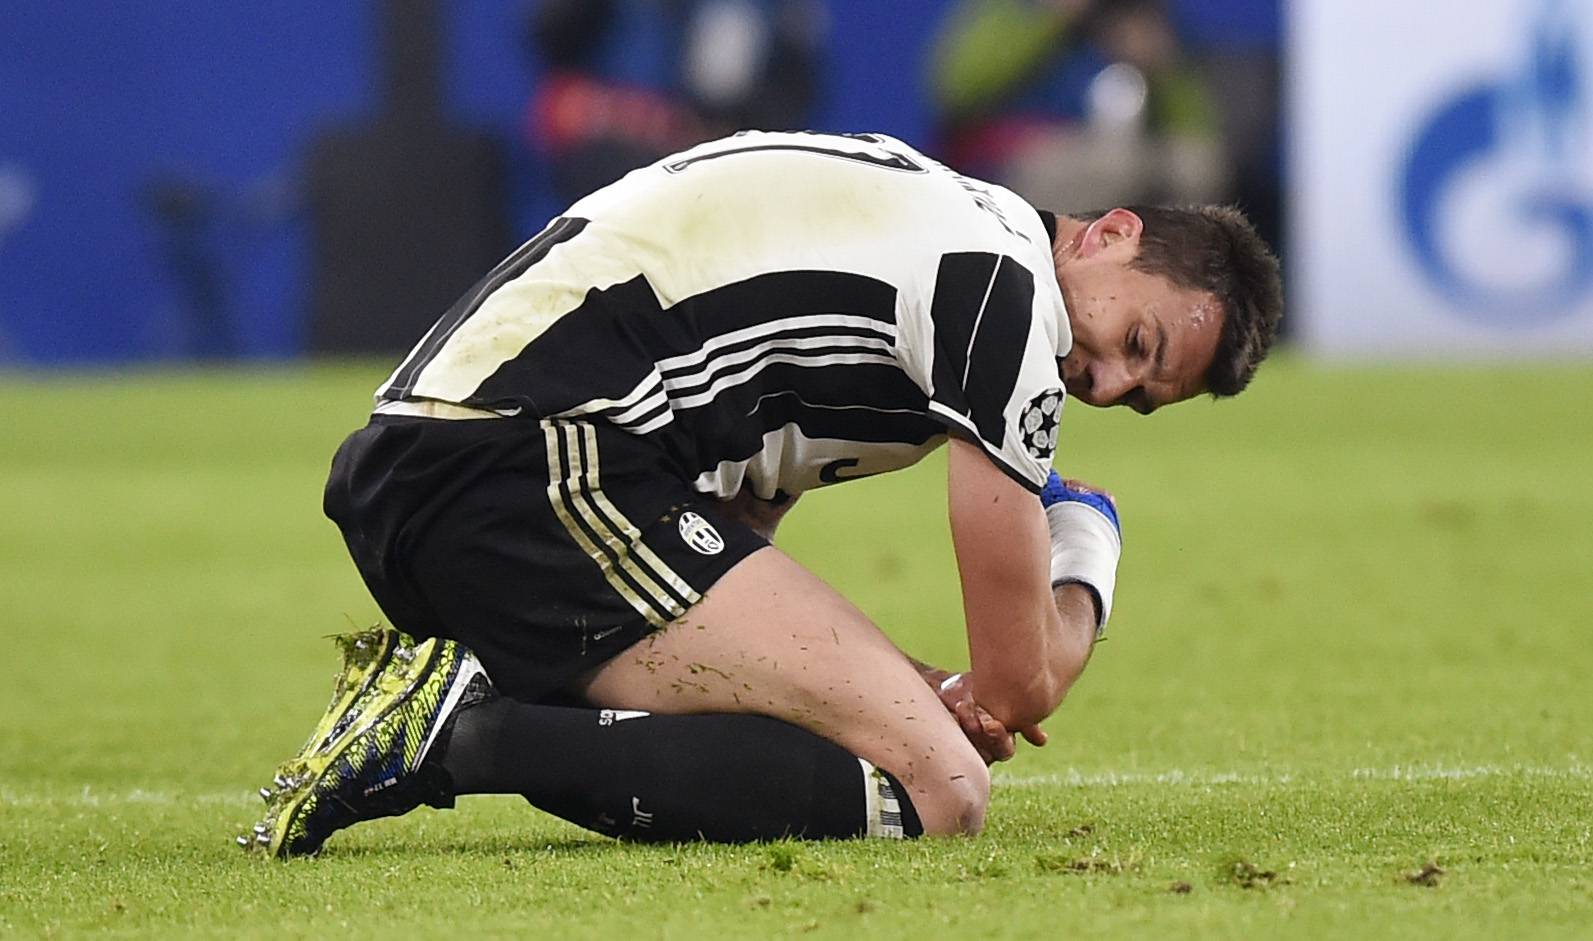 Juventus' Mario Mandzukic lies injured